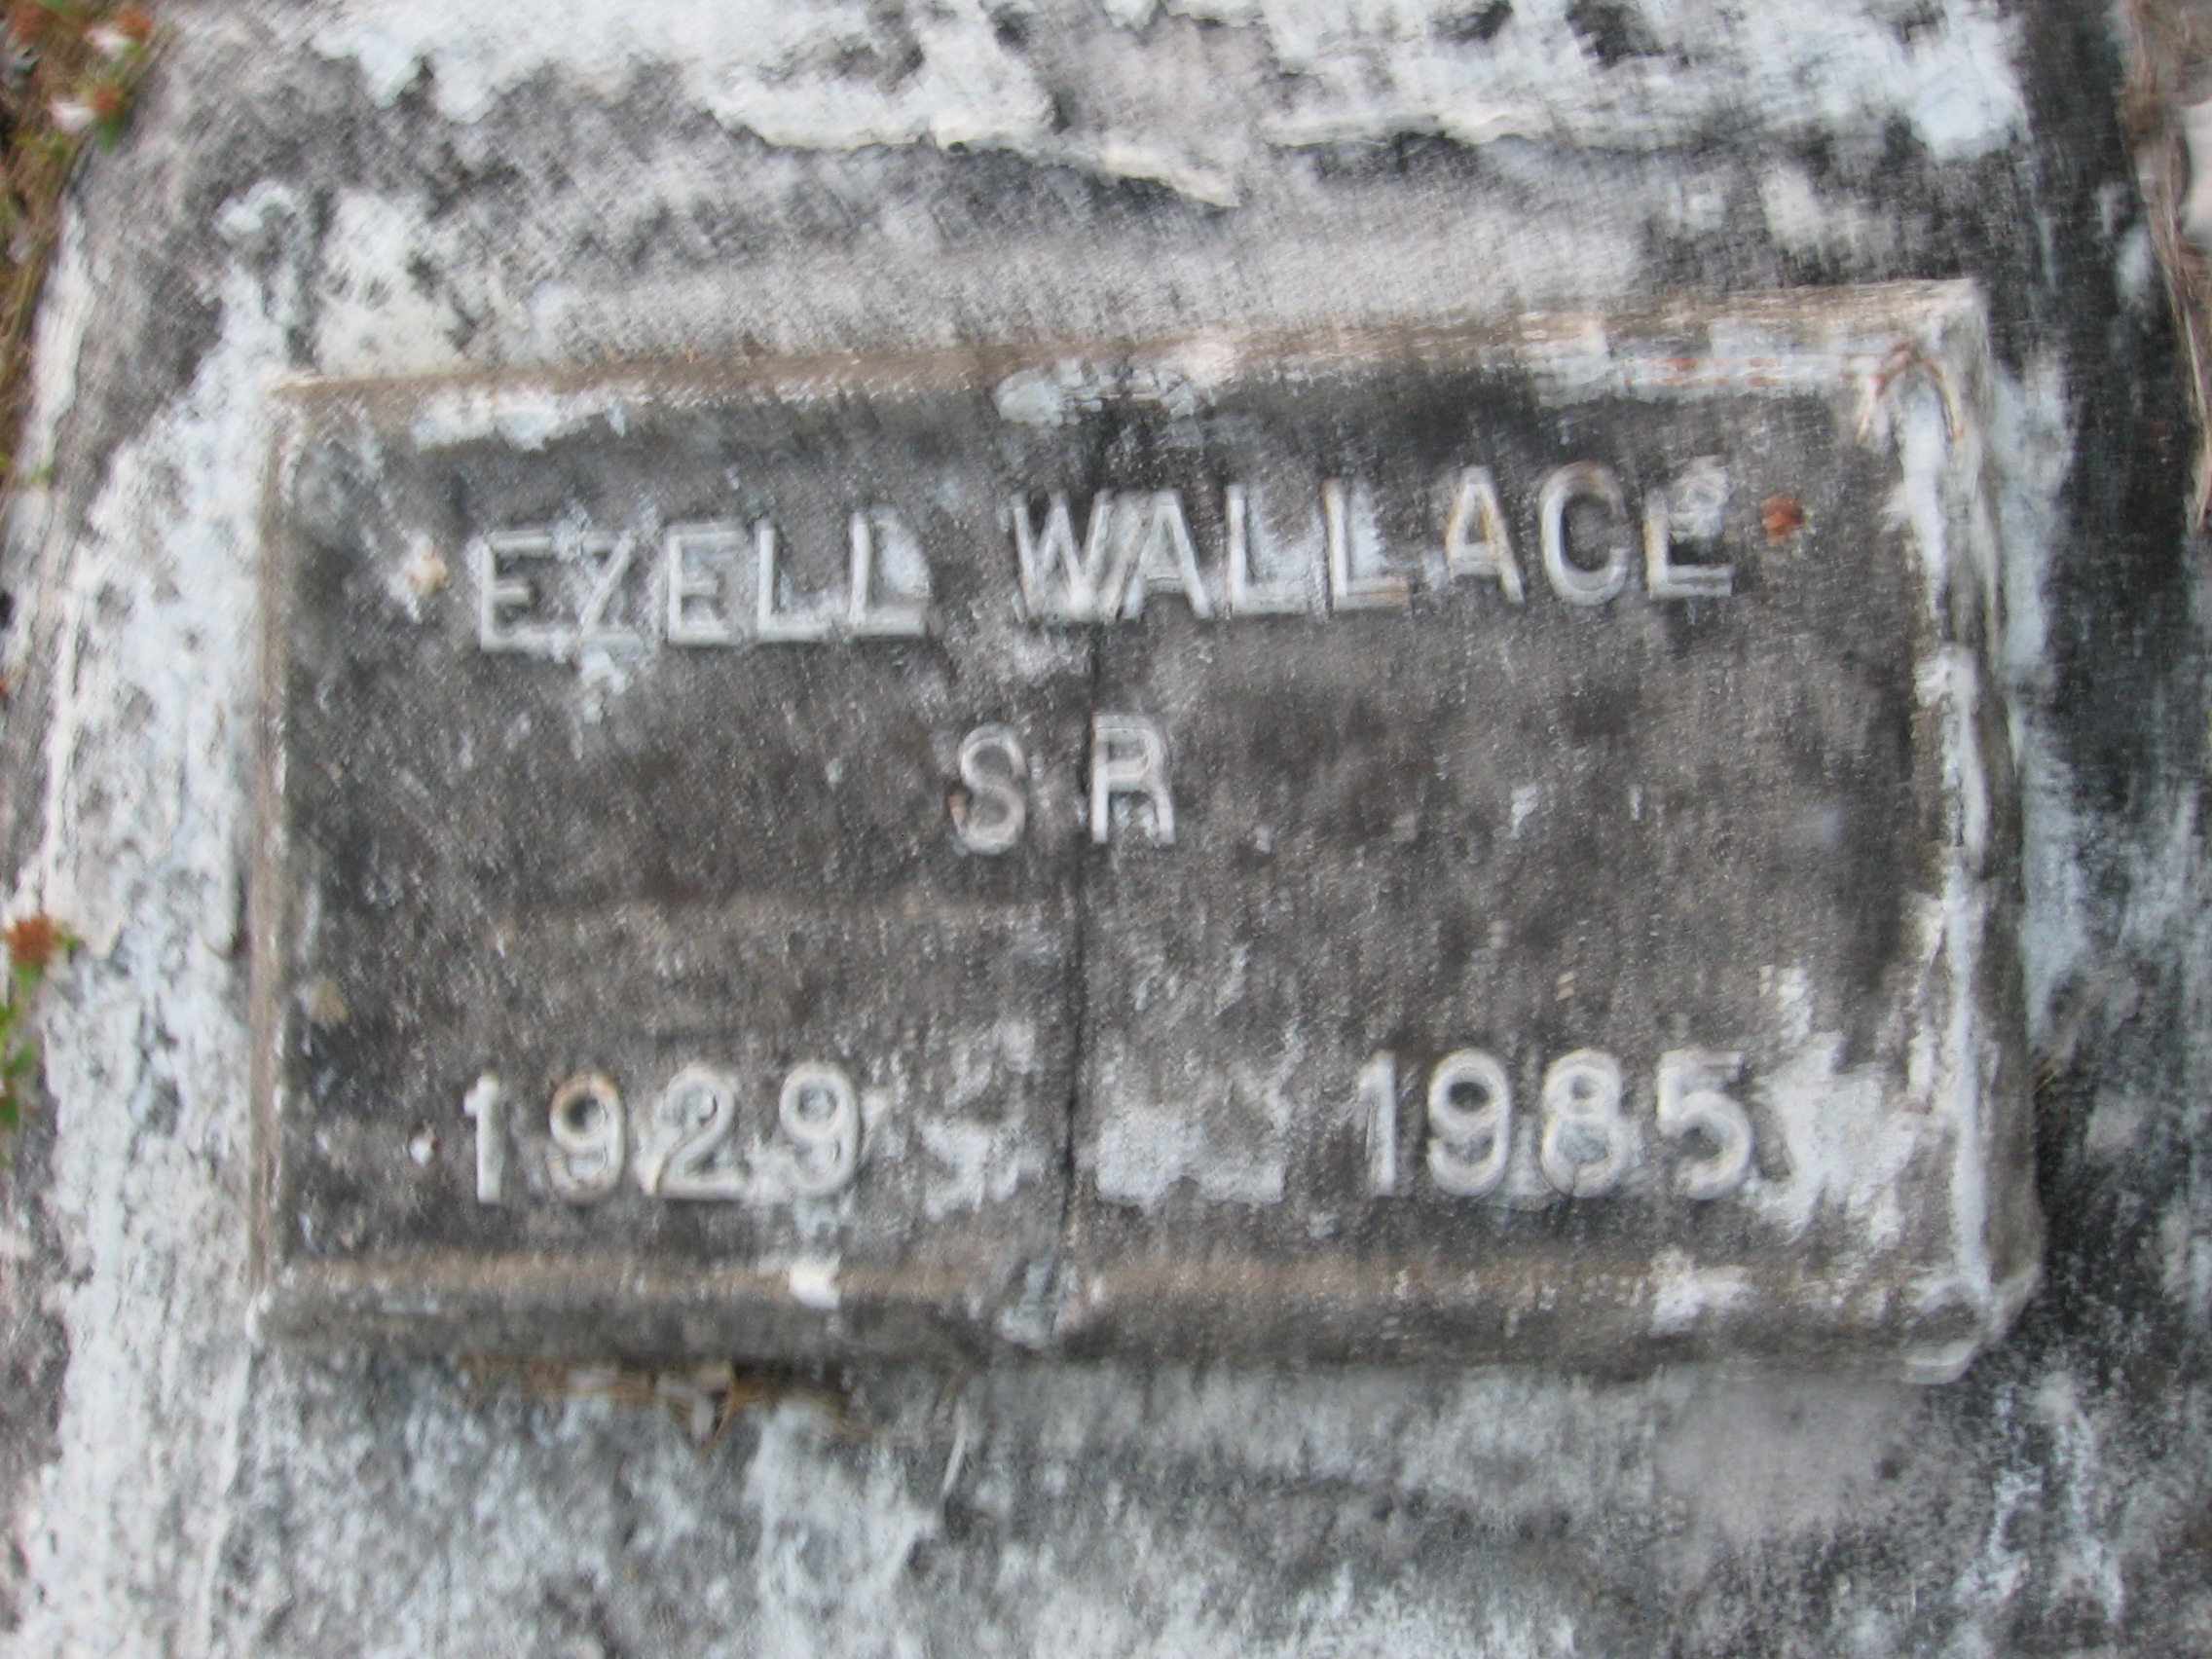 Ezell Wallace, Sr